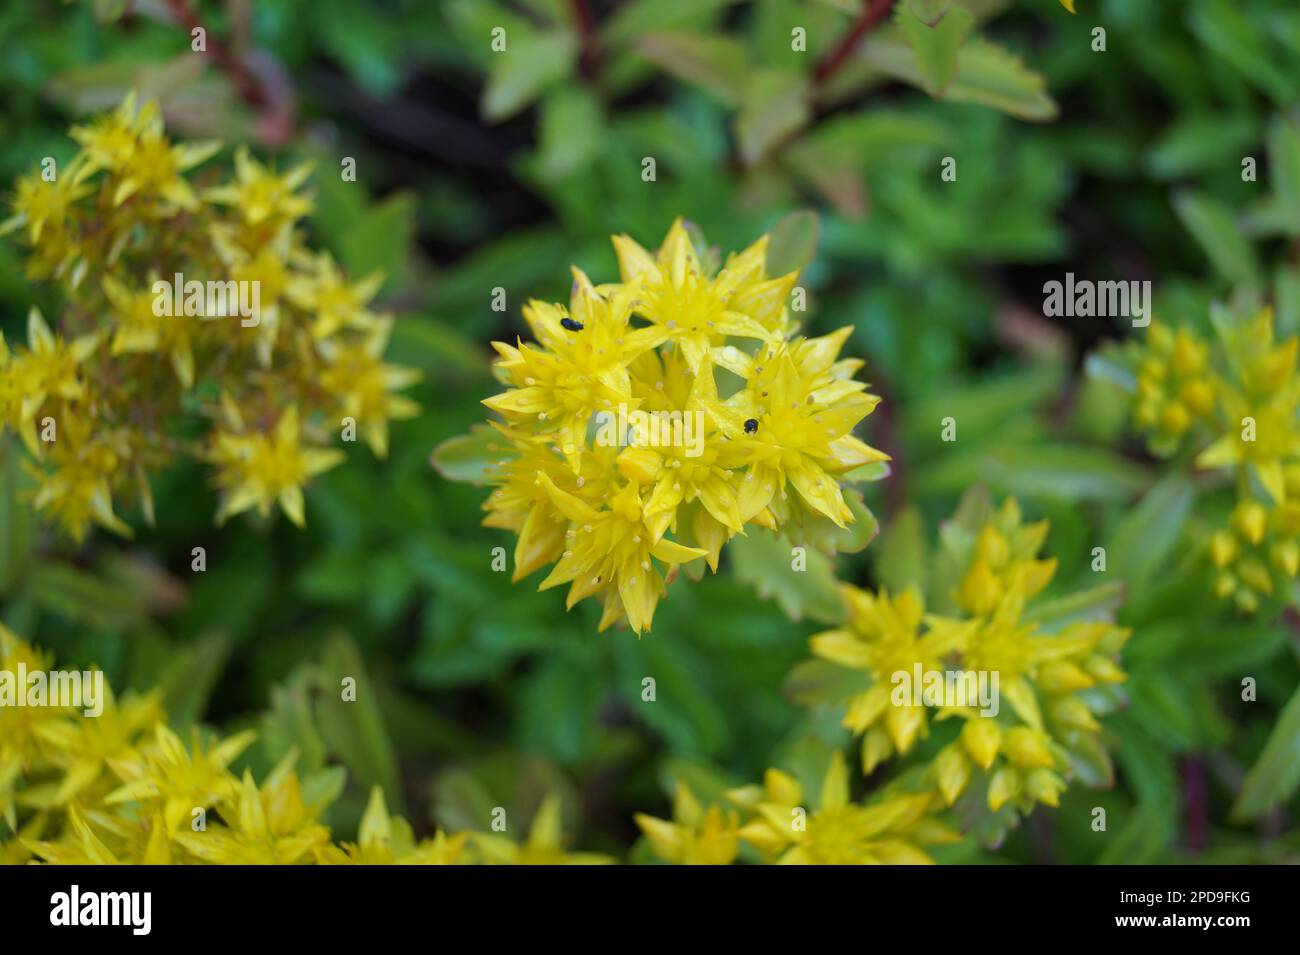 yellow flower of sedum kamtschaticum Stock Photo